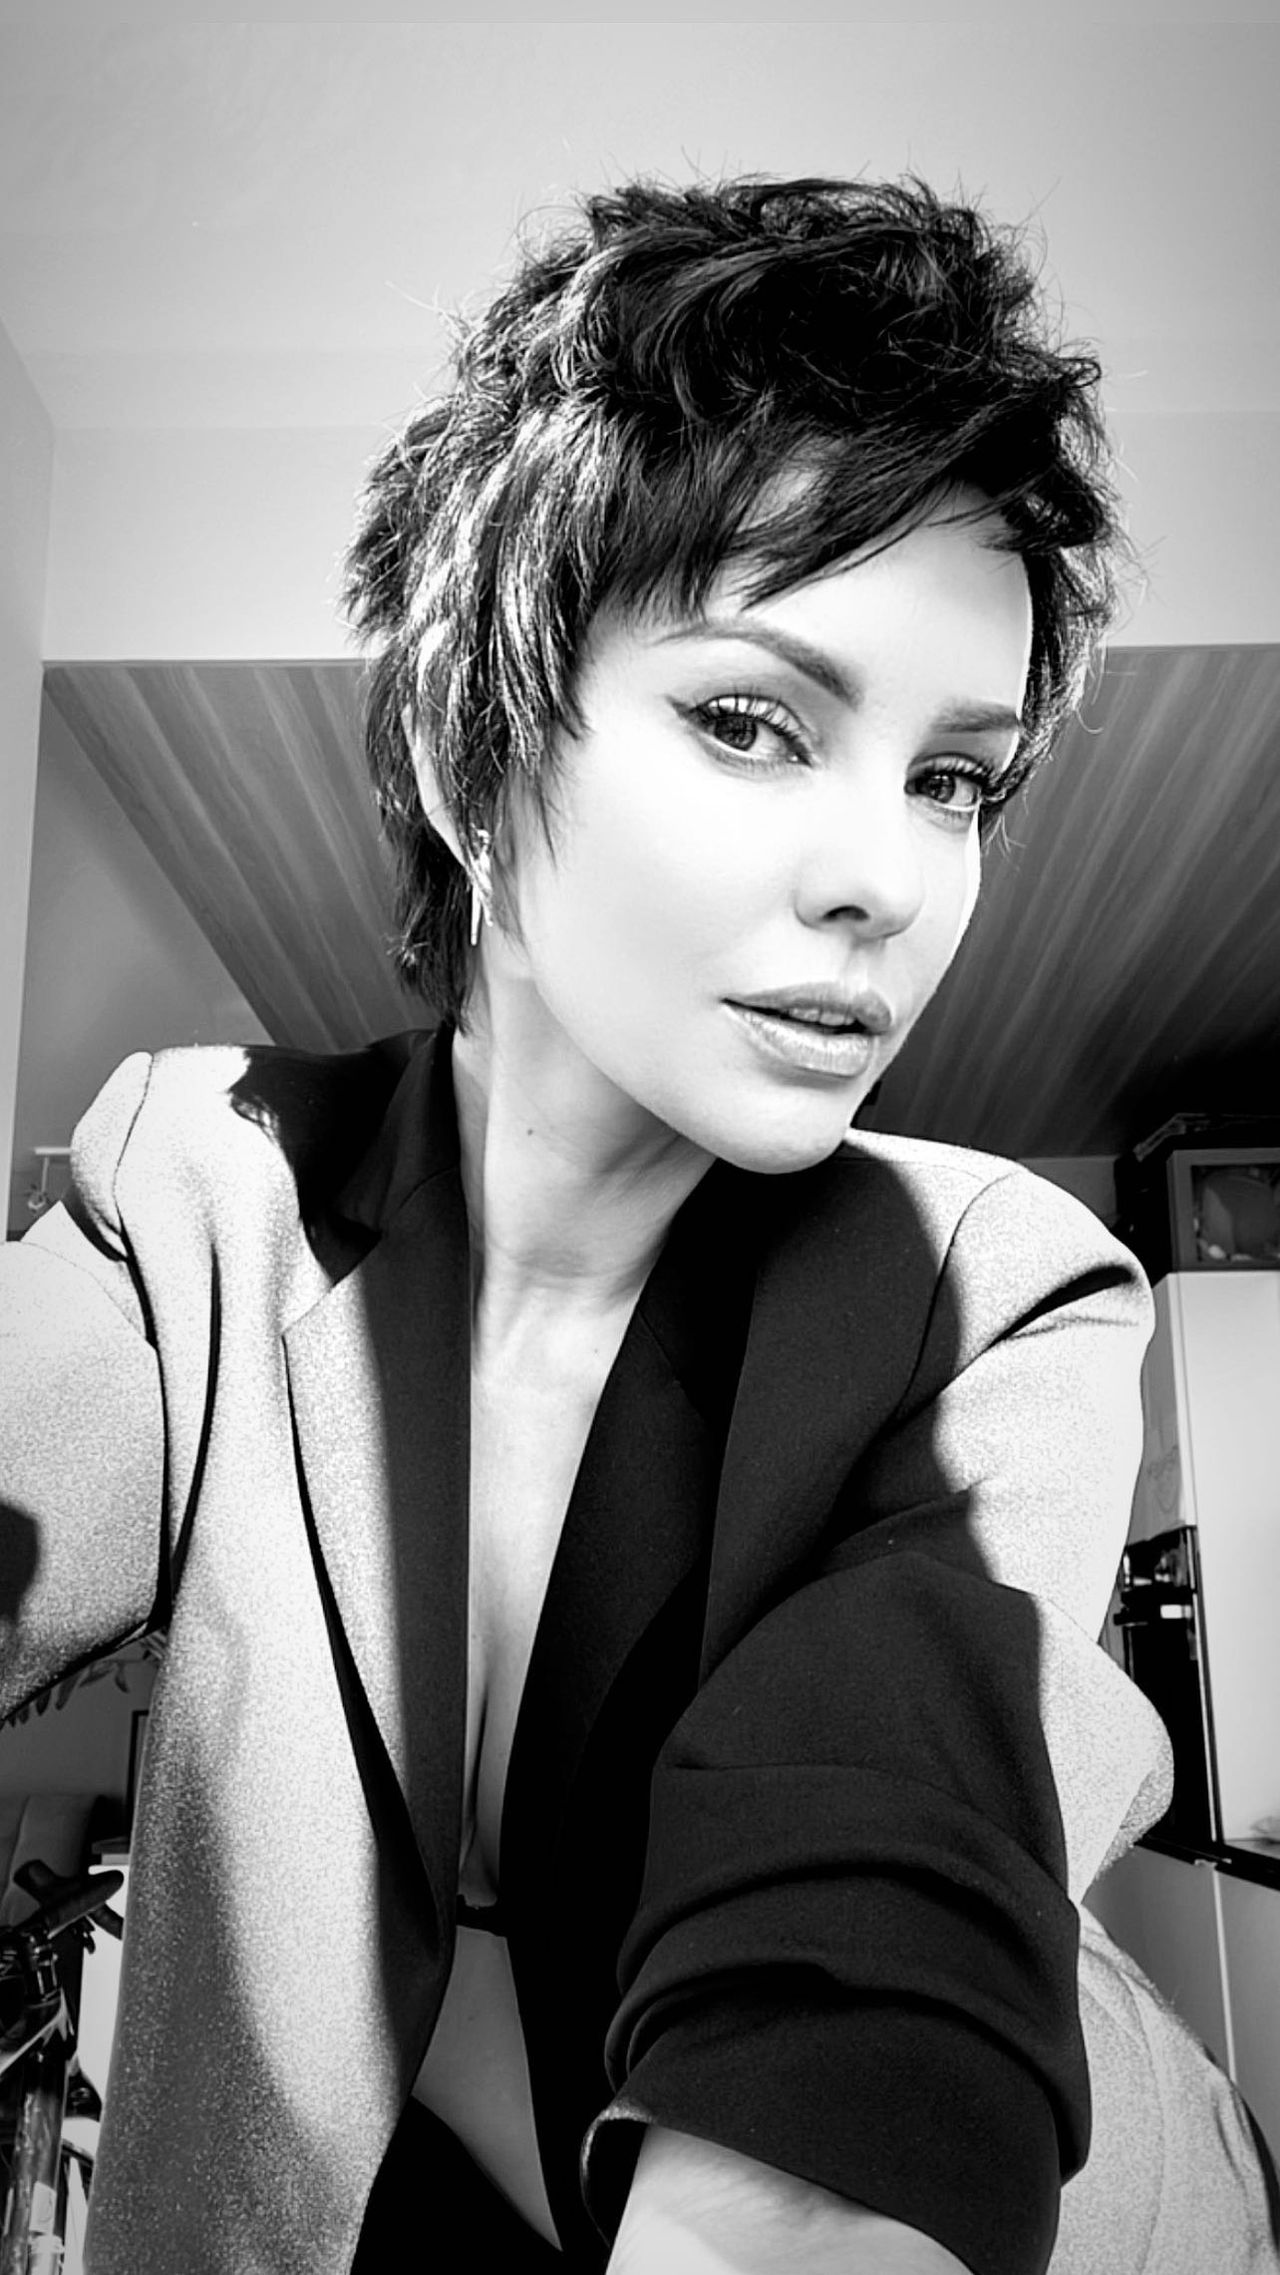 Dorota Gardias w nowej fryzurze
Instagram/dorotagardias